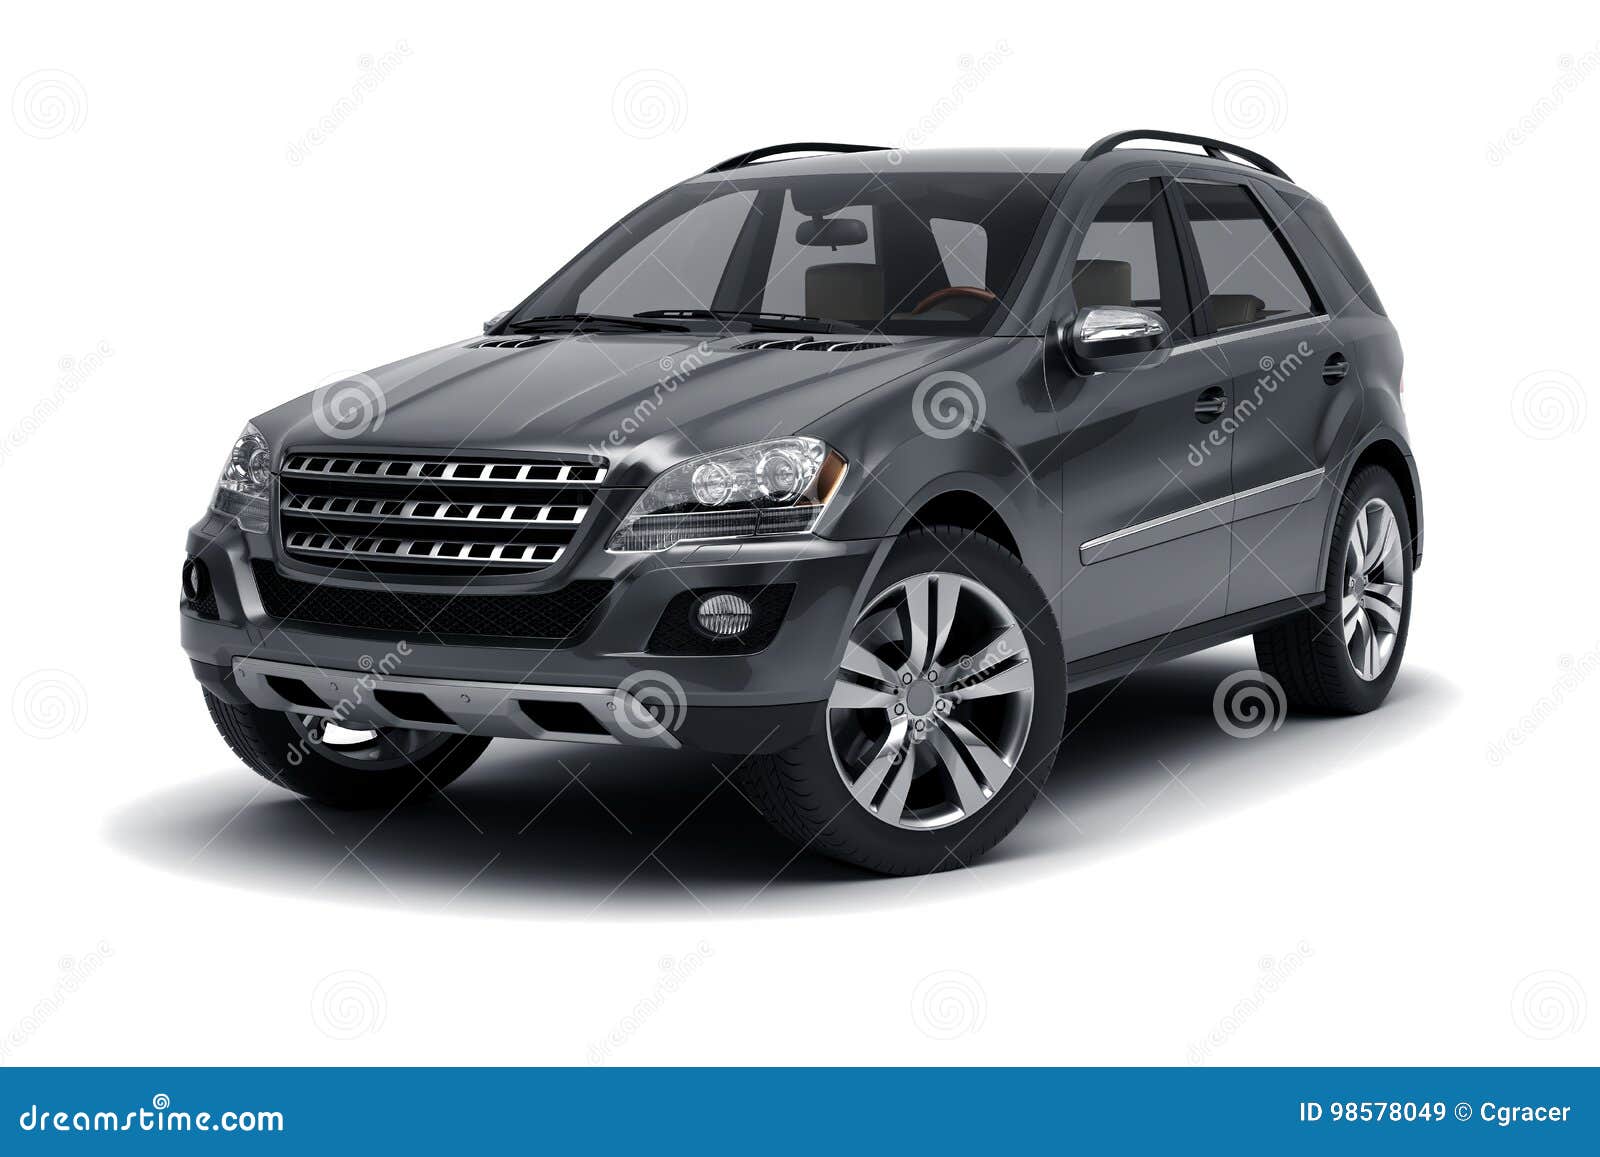 Black SUV stock image. Image of vehicle, automobile, background - 98578049